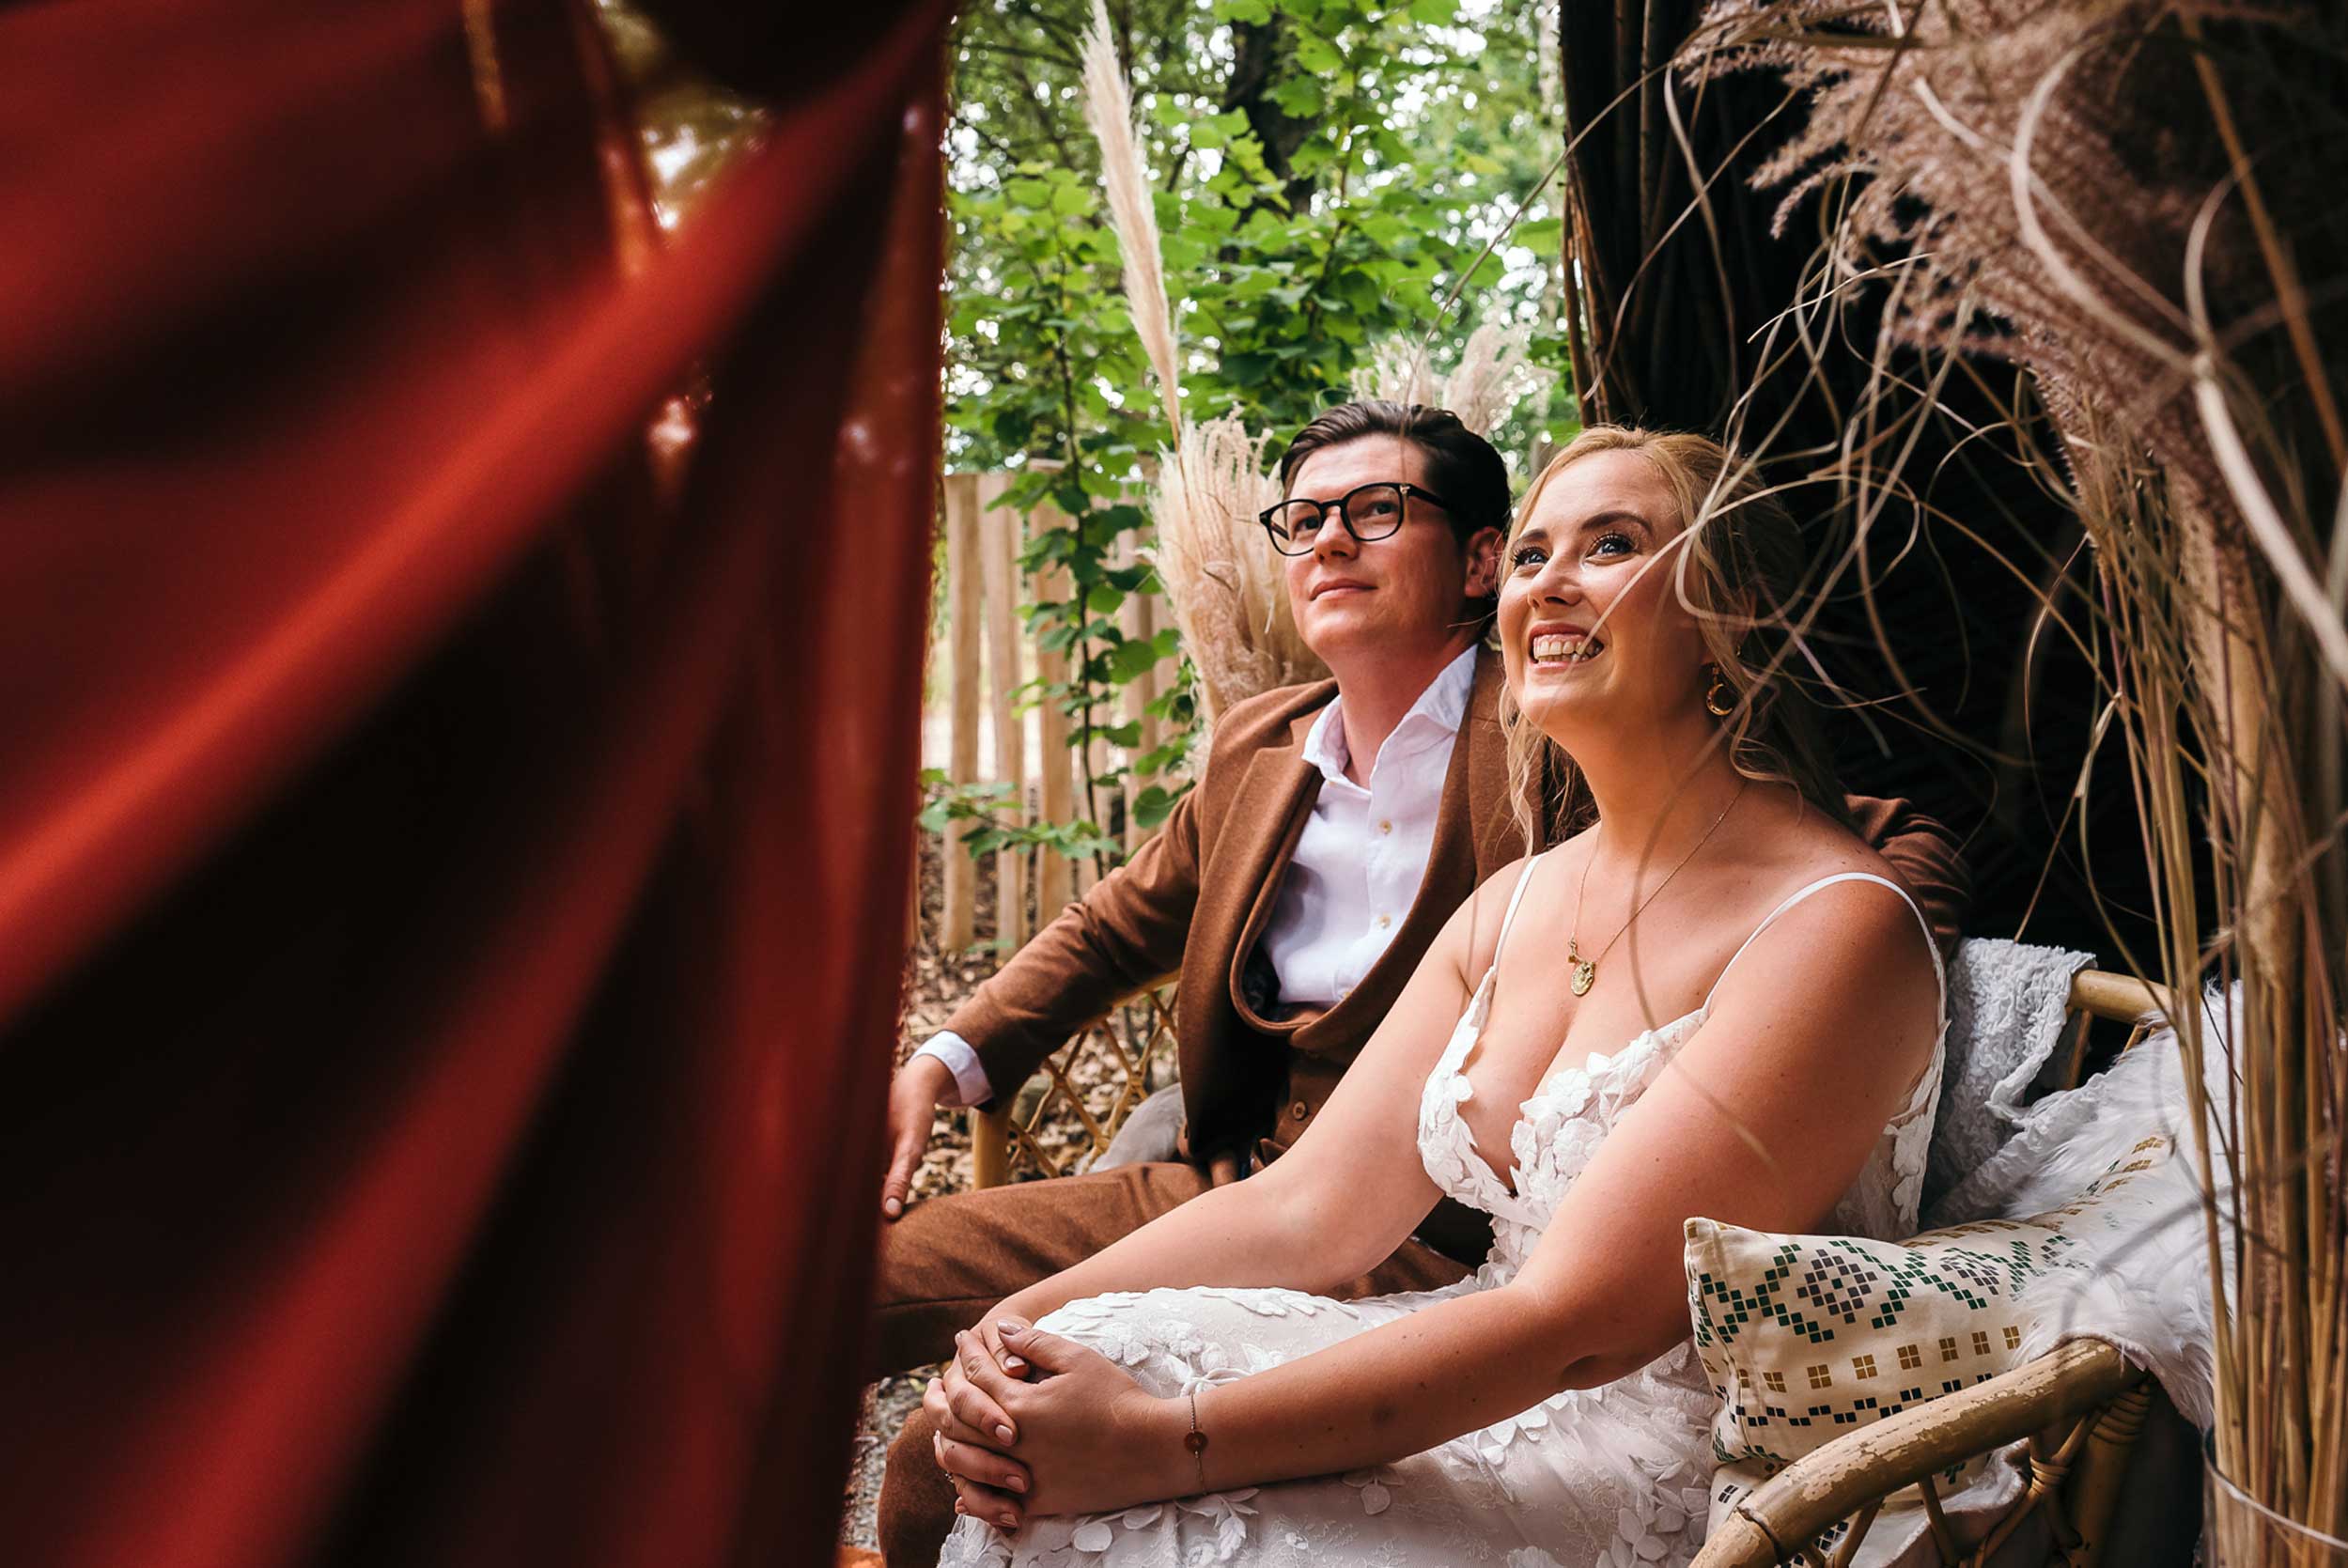 Bruid en bruidegom kijken vol verwachting naar de getuige in een visueel aantrekkelijke foto, waarbij het dieprode kleed van de getuige de helft van het beeld in beslag neemt.